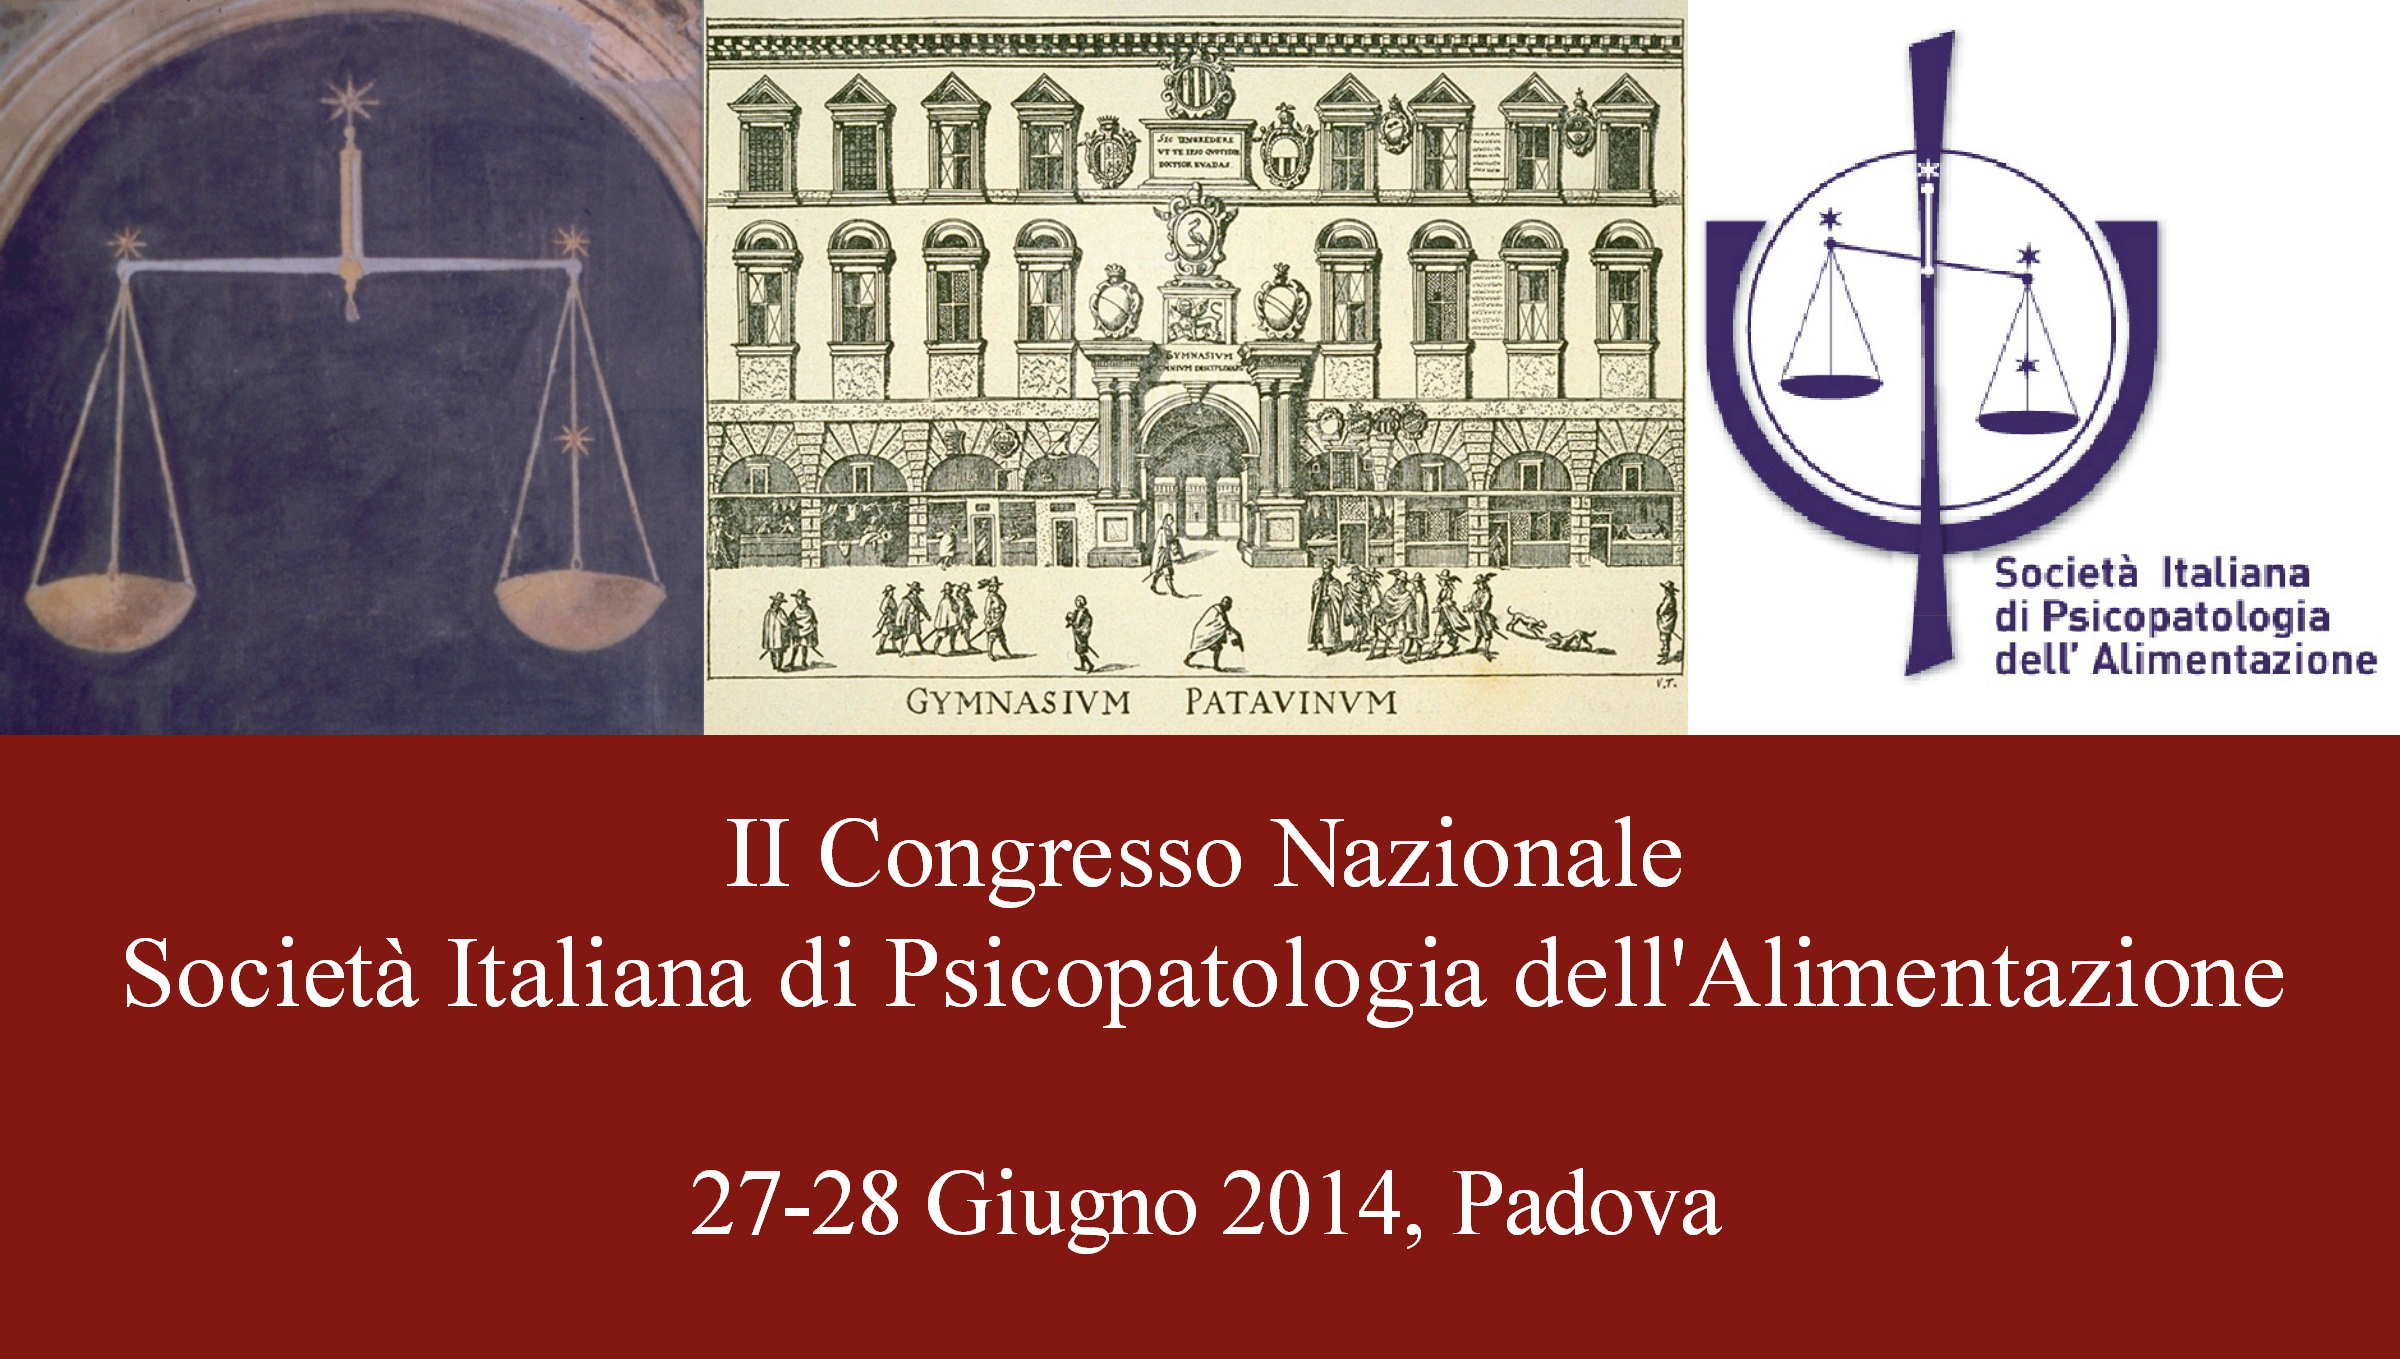 II Congresso Nazionale di Padova, 27-28 Giugno 2014